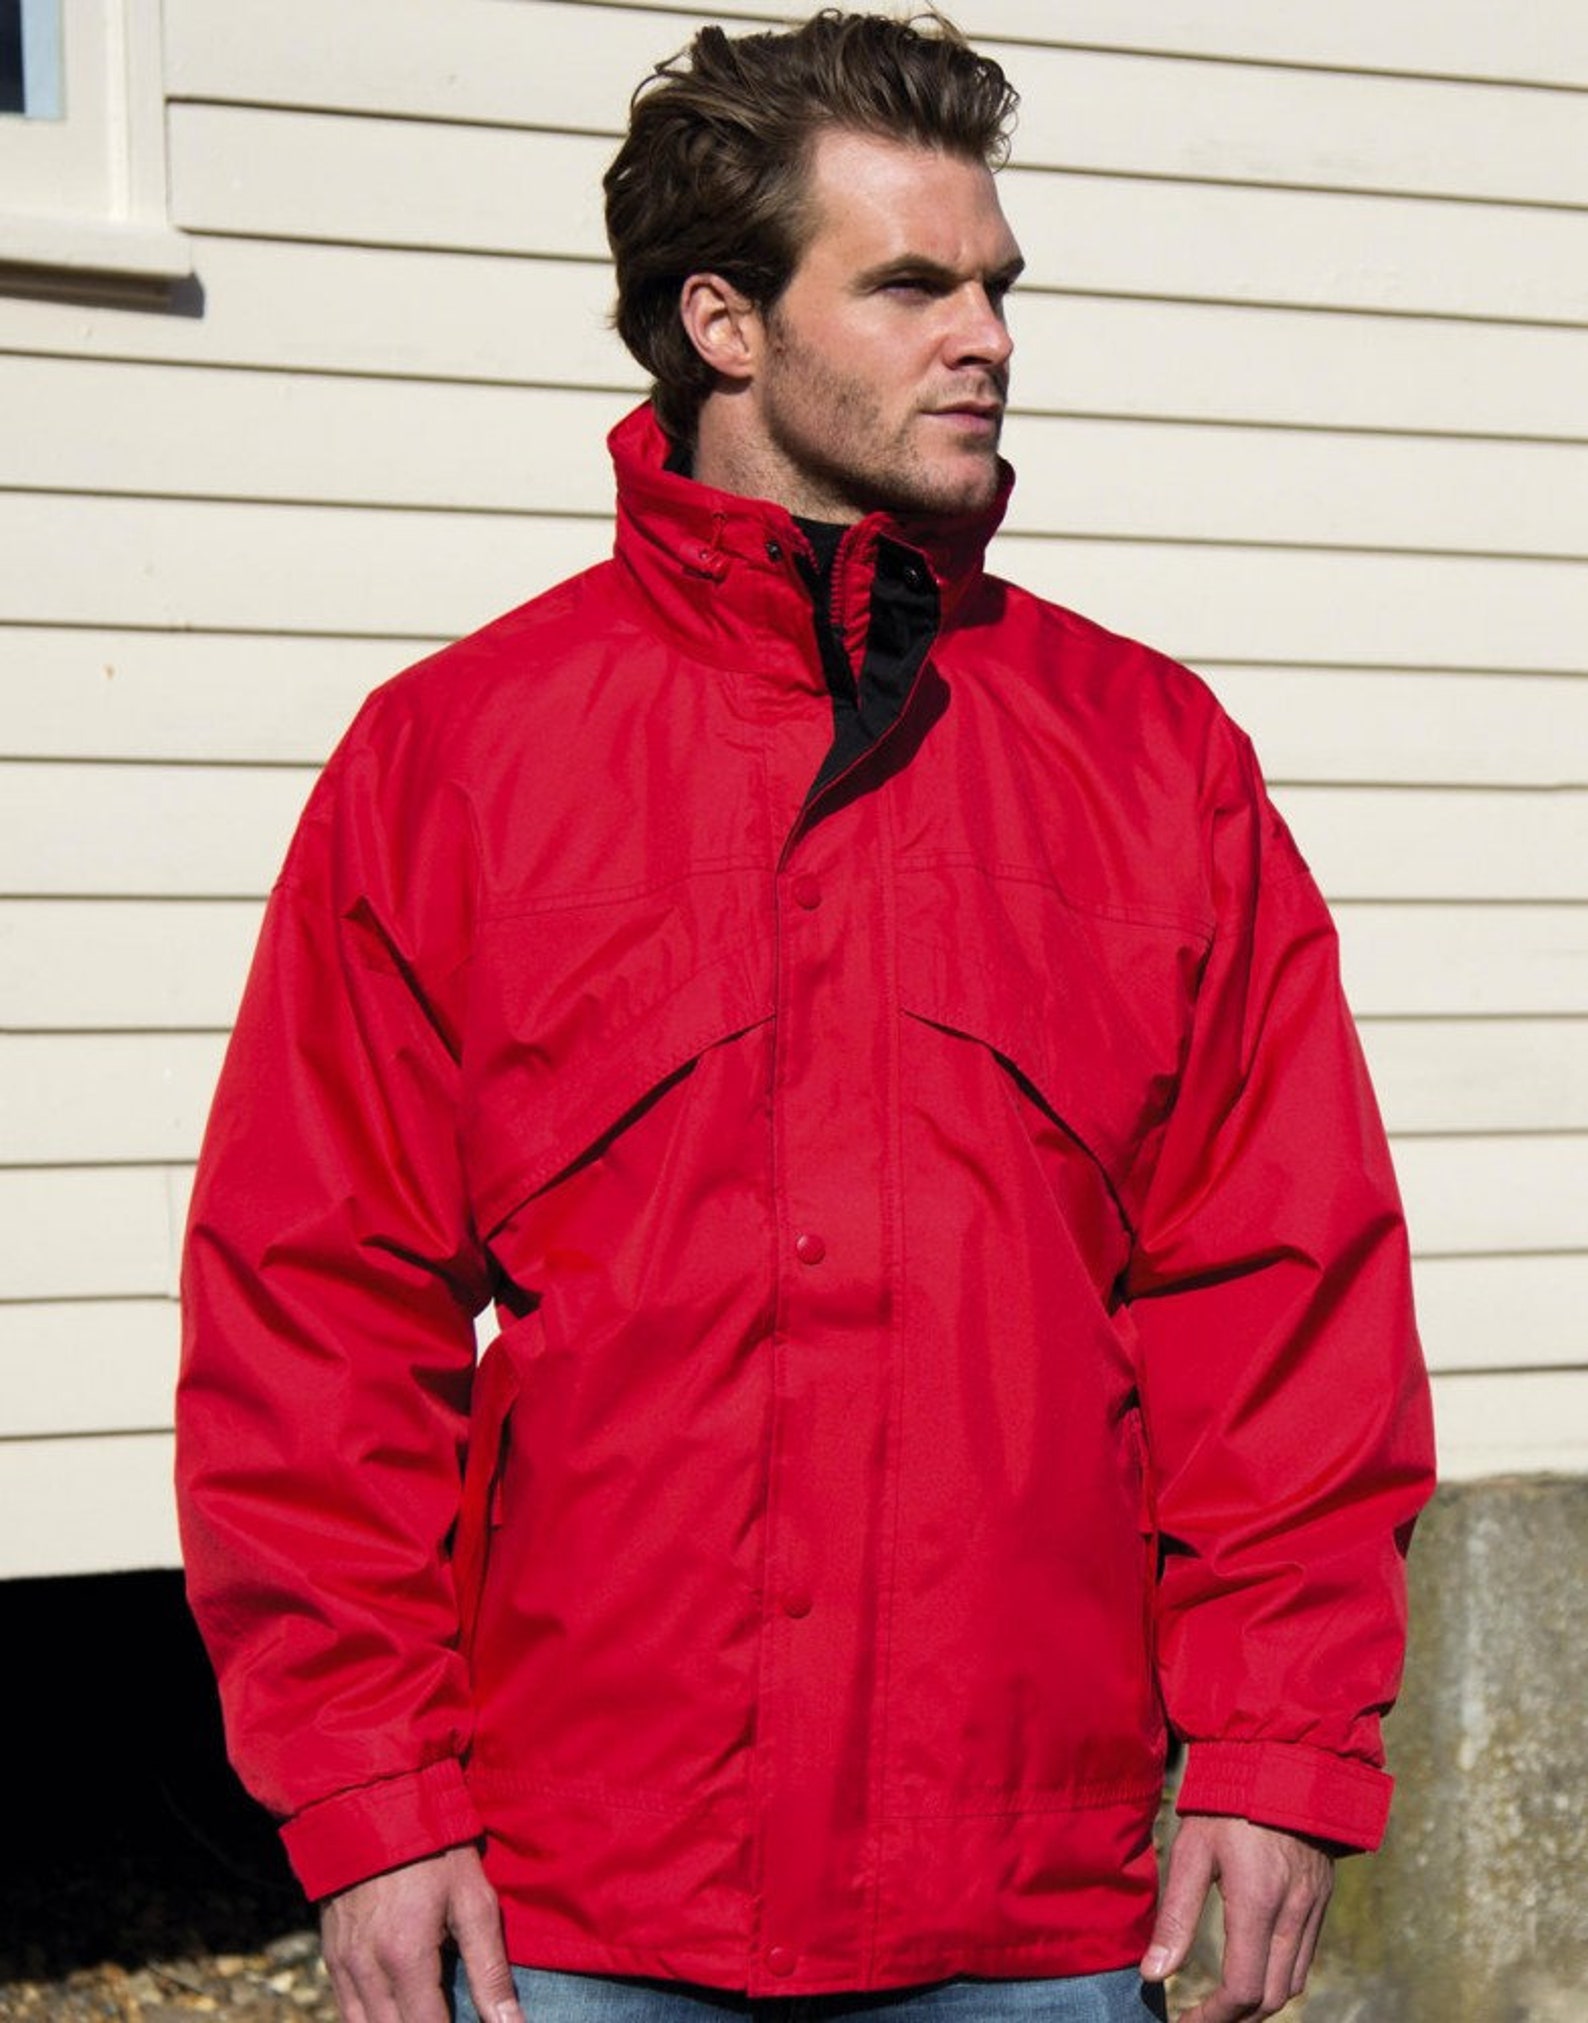 Men's 3 in 1 Red Jacket Jacket with Fleece Waterproof Zip | Etsy